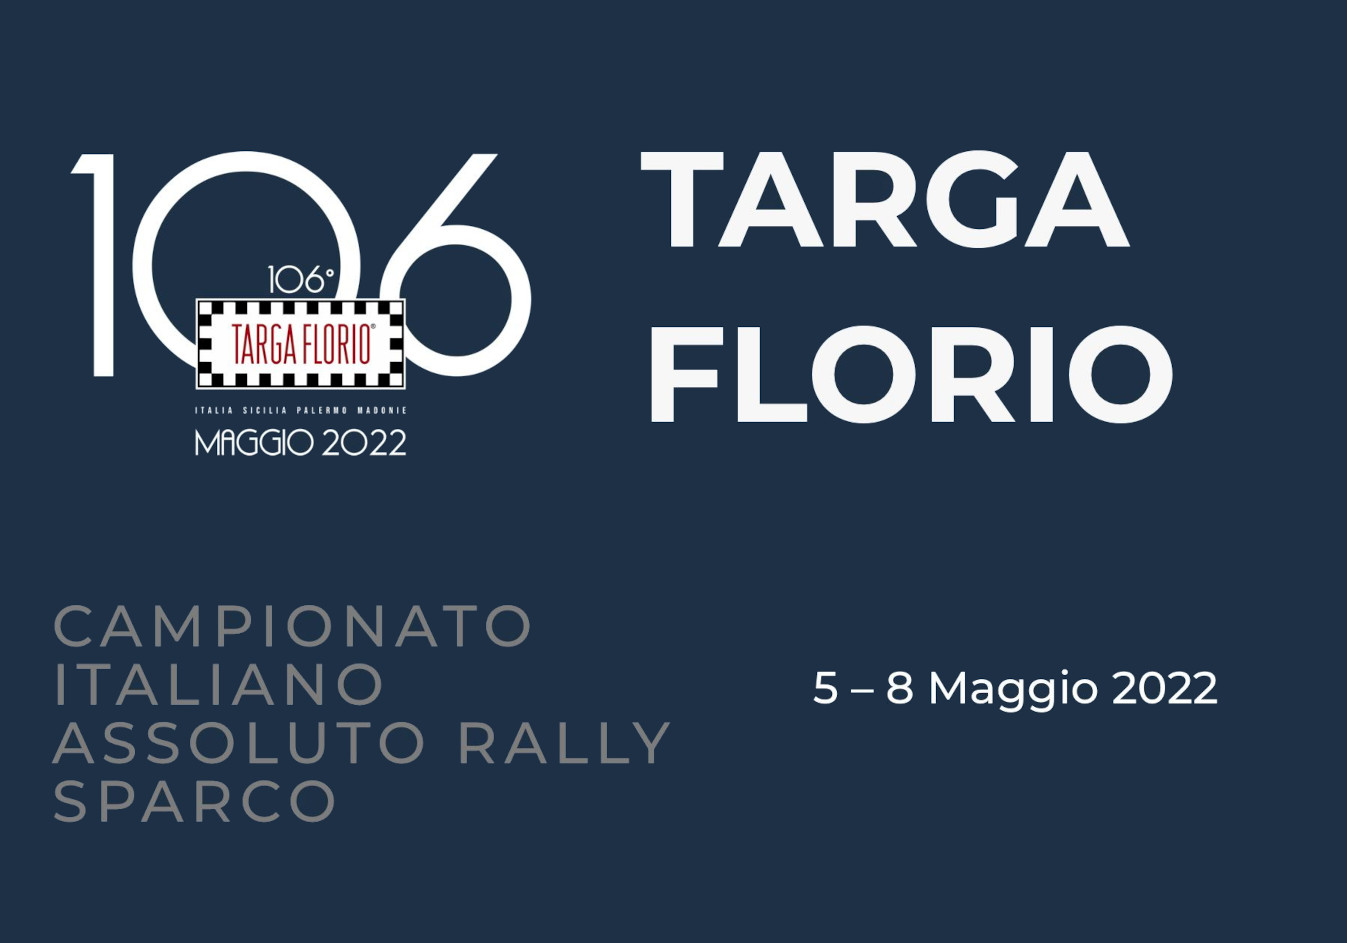 Al via la 106^ edizione della Targa Florio: terzo round del Campionato Italiano Assoluto Rally Sparco